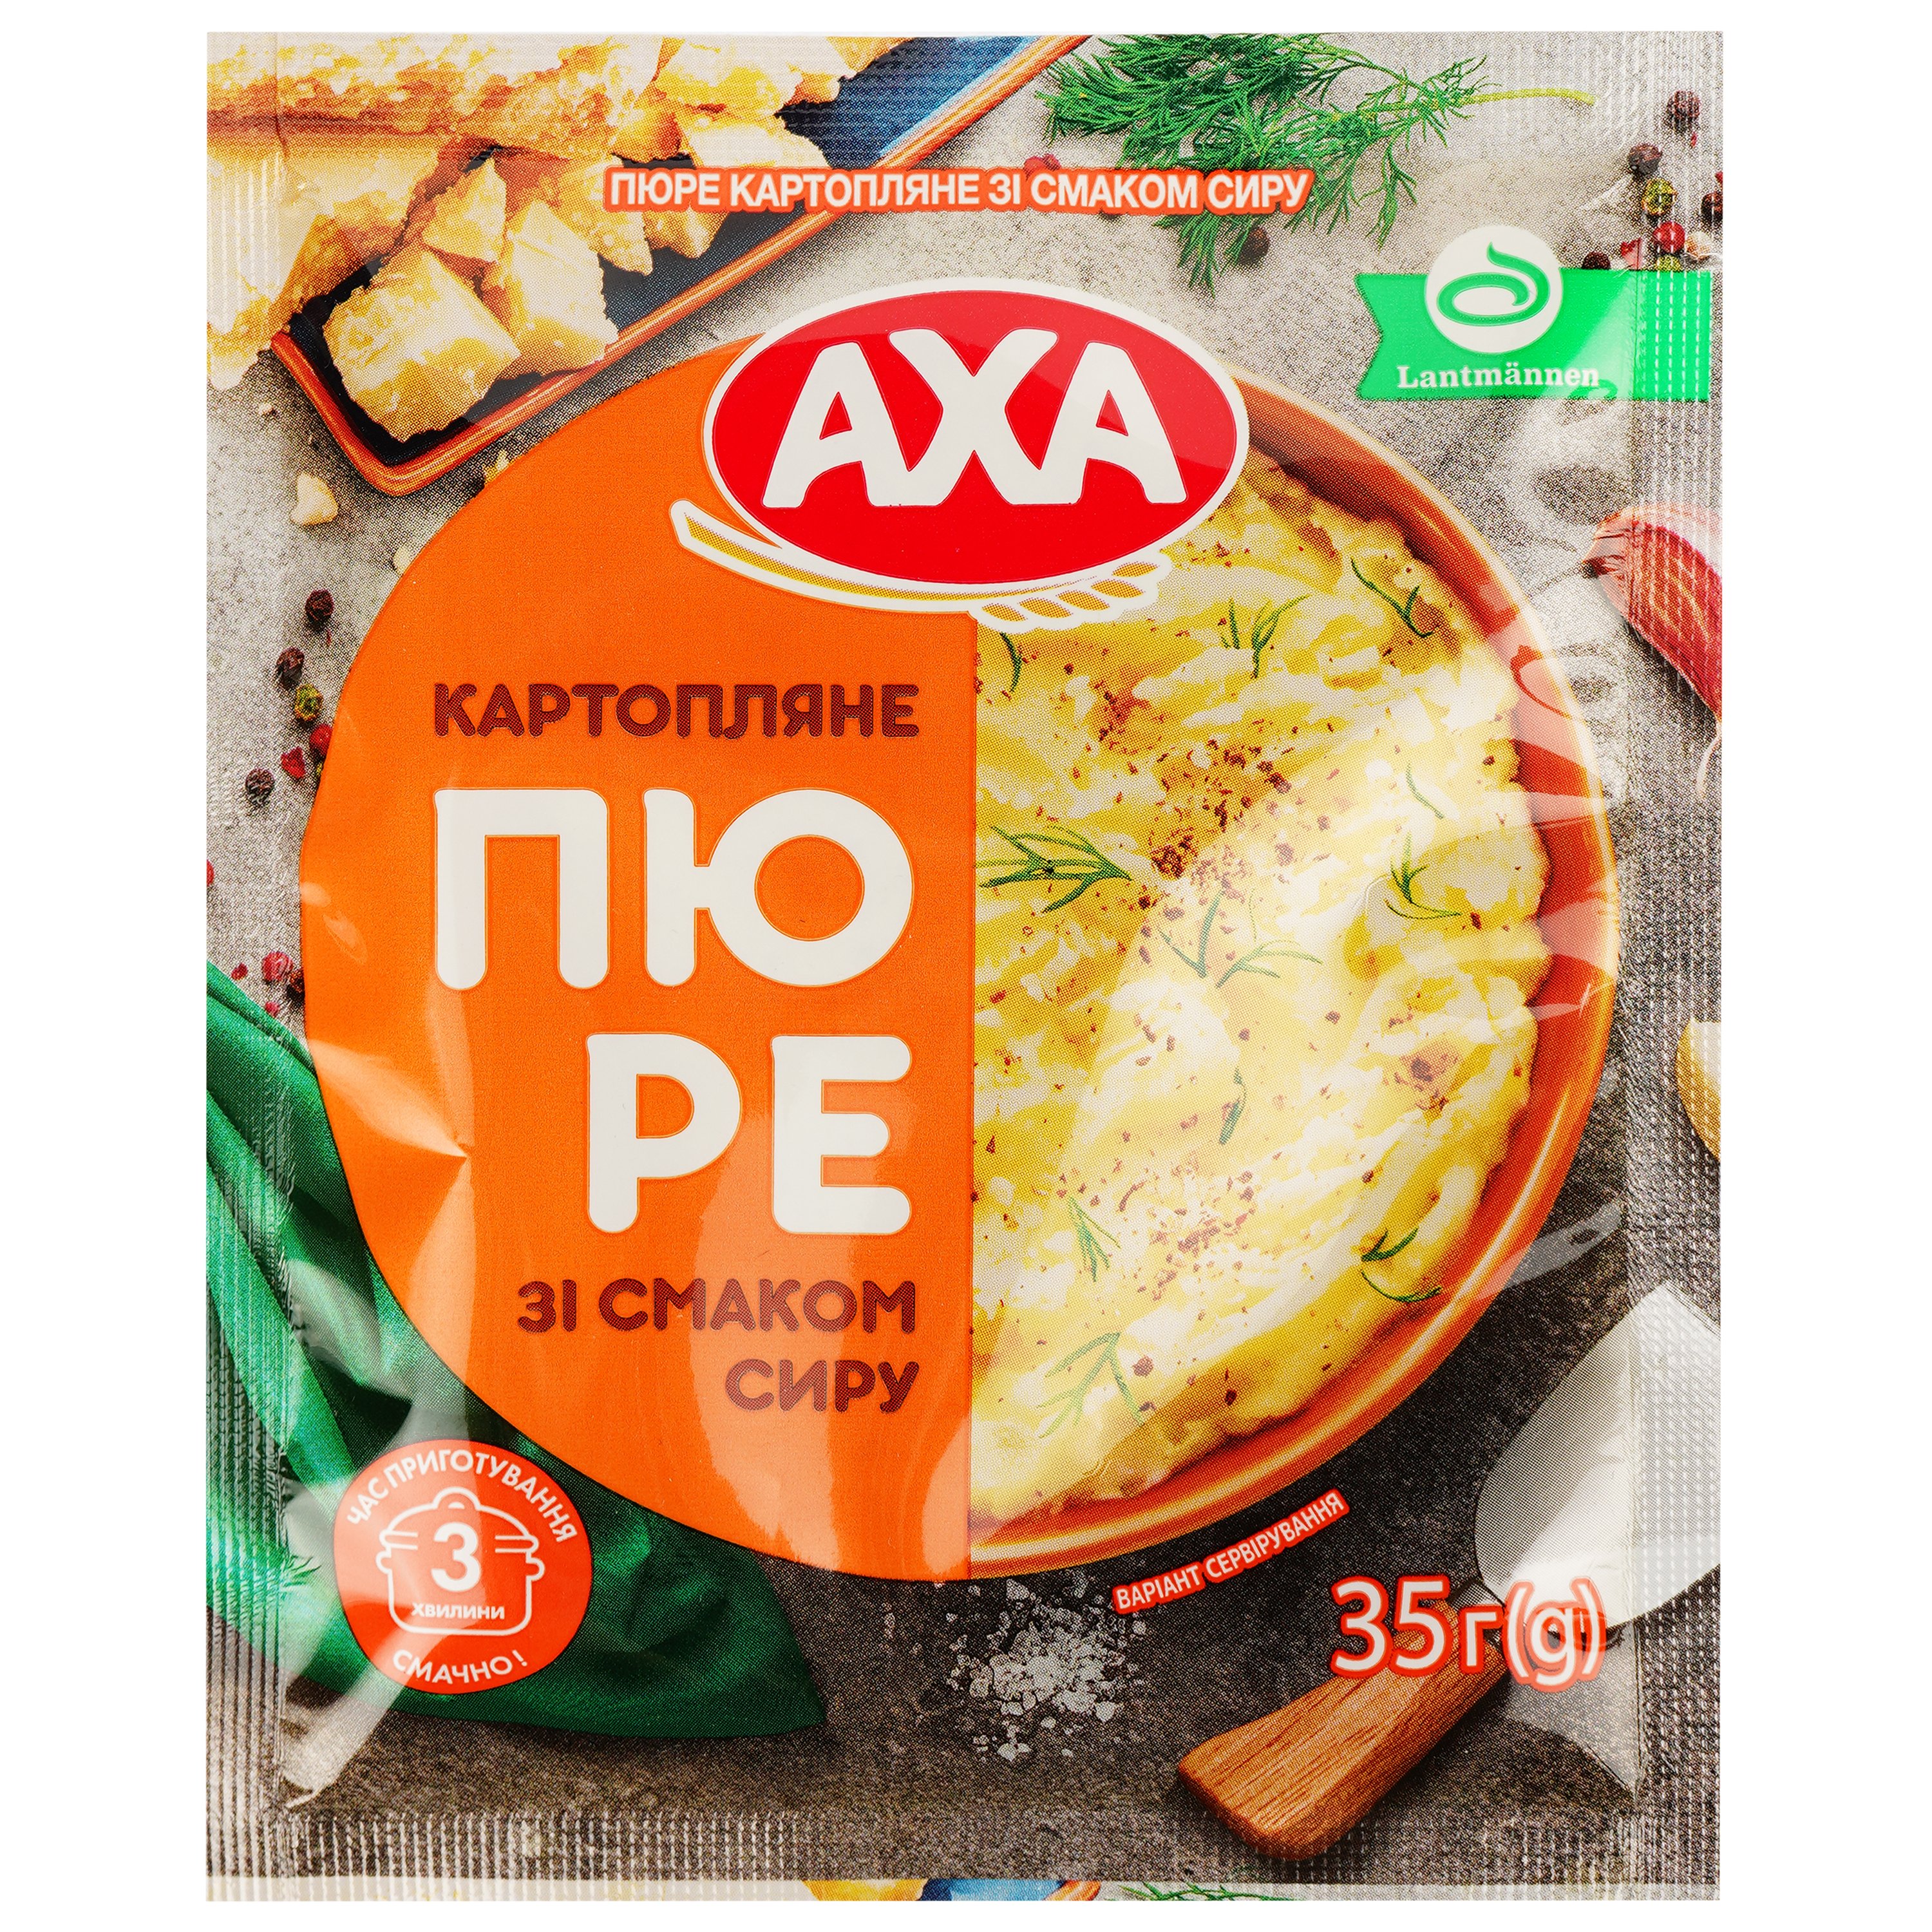 Пюре быстрого приготовления AXA Картофельное со вкусом сыра 35 г (922873) - фото 1